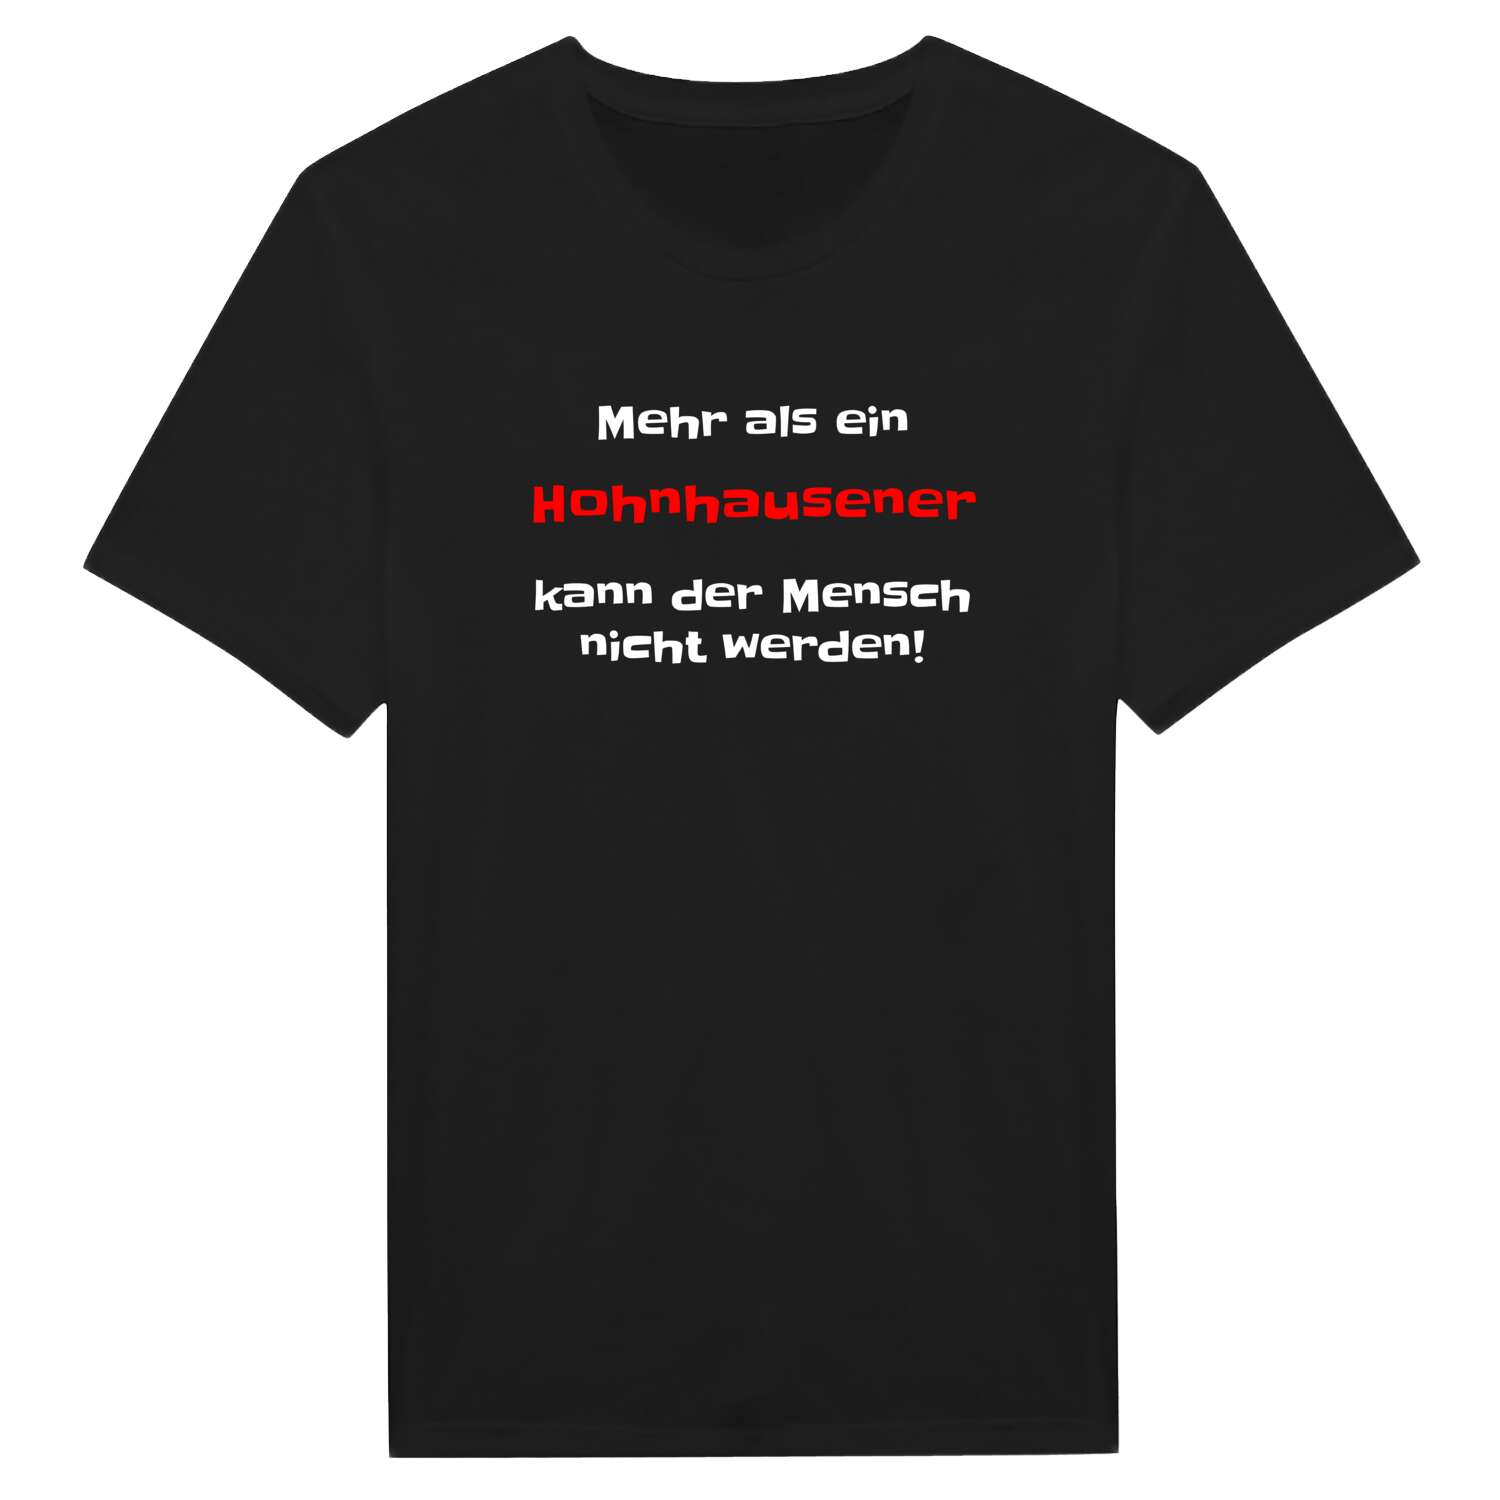 Hohnhausen T-Shirt »Mehr als ein«